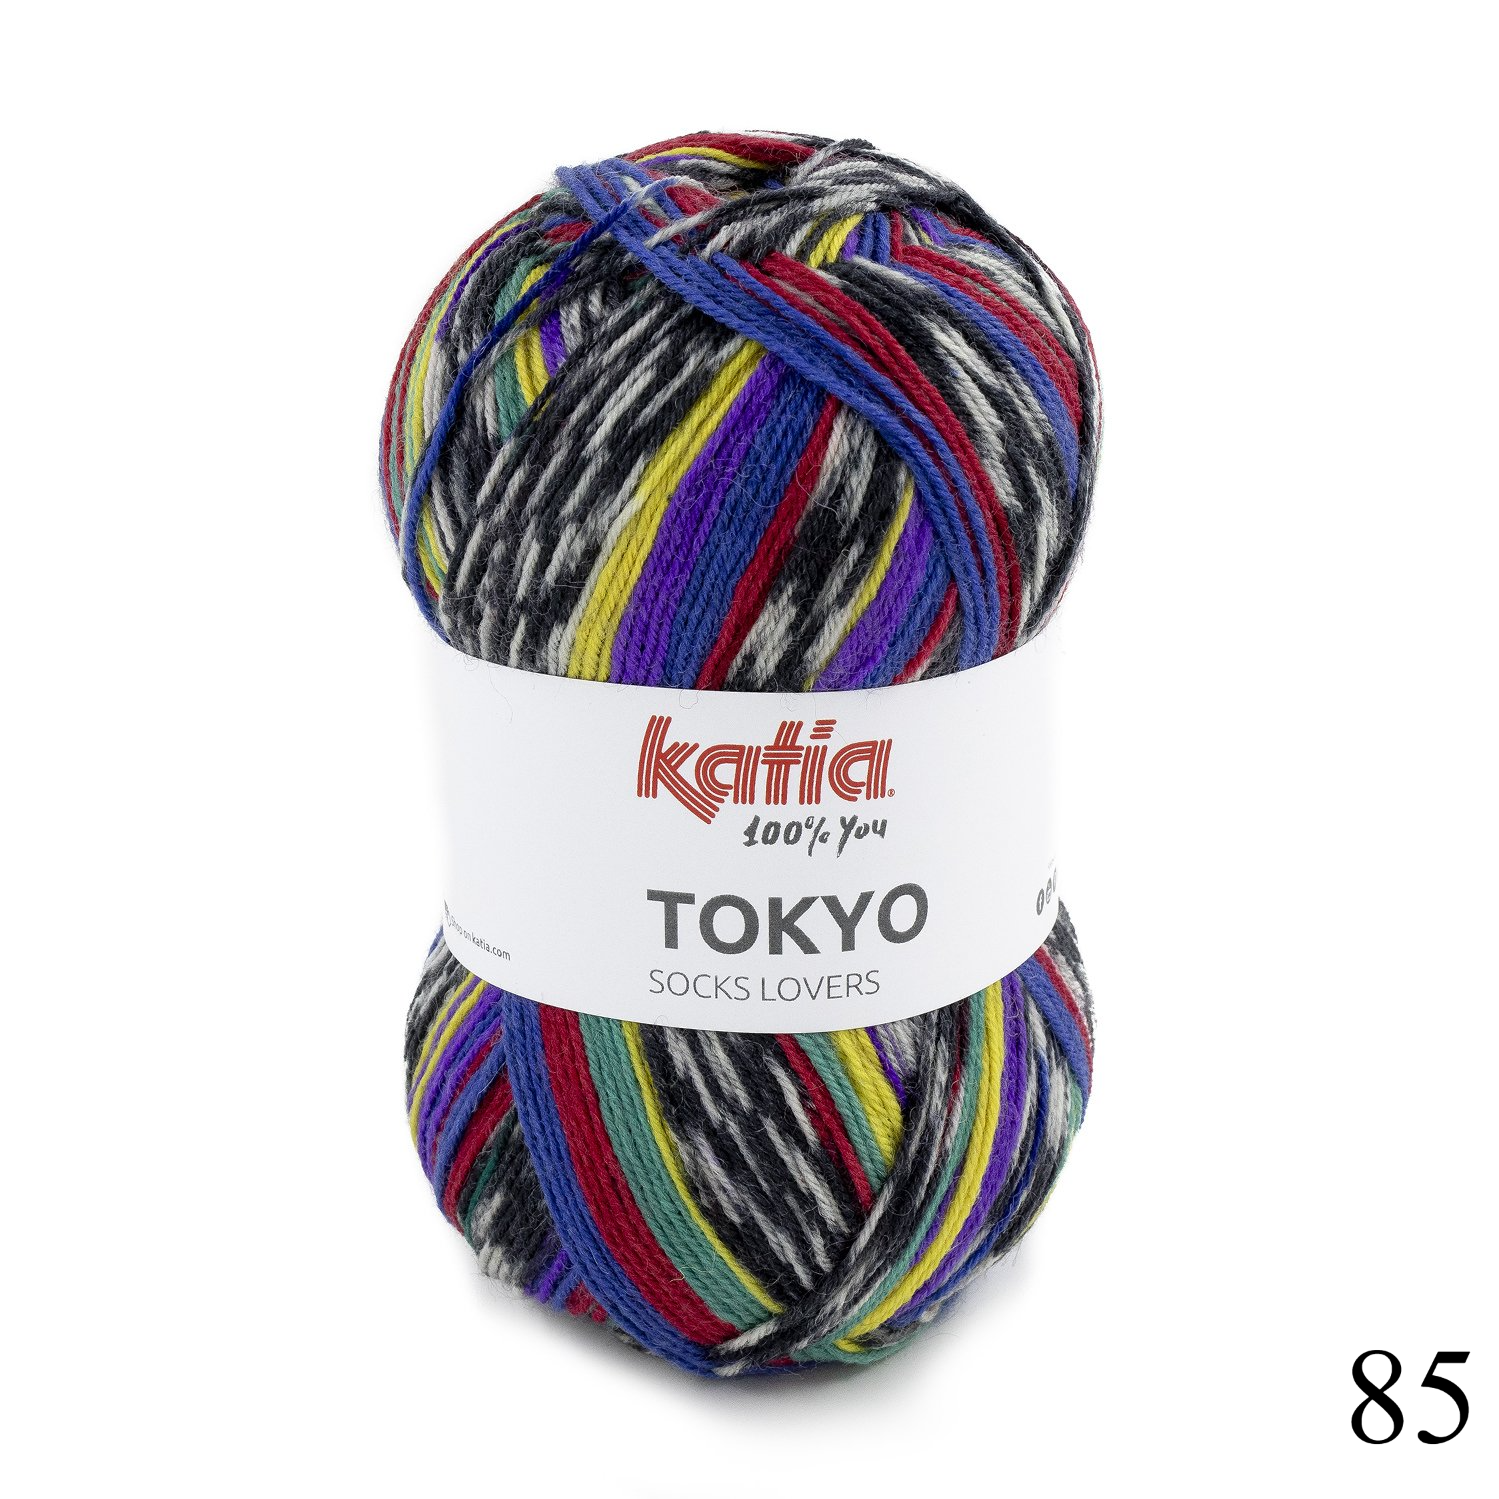 Snelkoppelingen Omkleden defect Katia Tokyo socks - Anyfma Lifestyle Boxtel